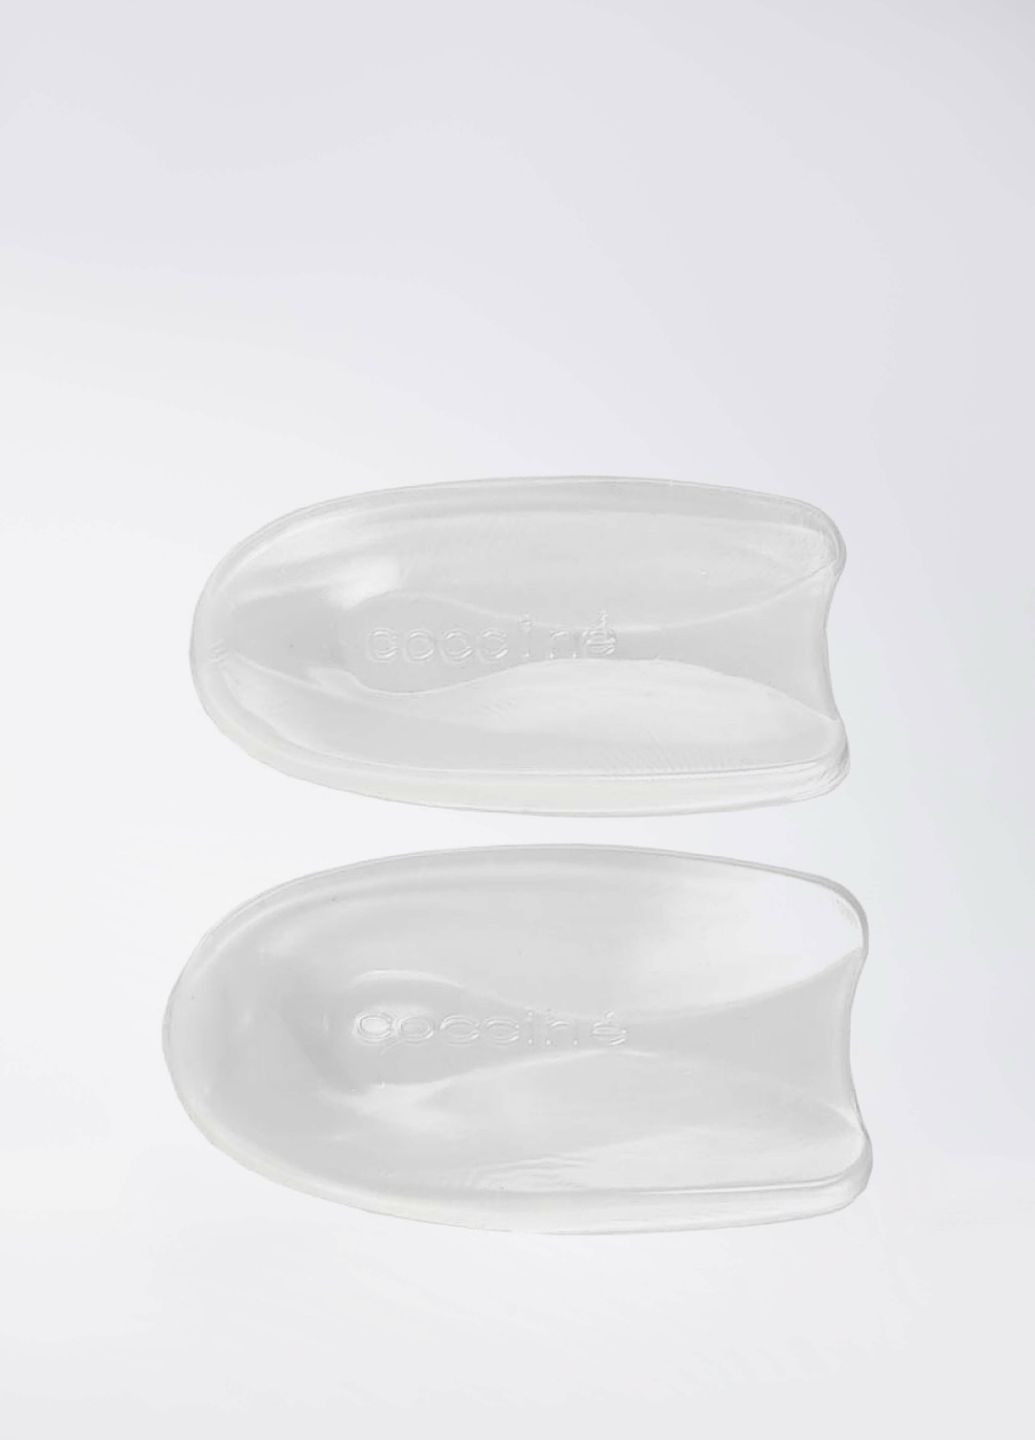 Гелевый подпяточник универсальный Coccine heel pad anatomic (277926532)